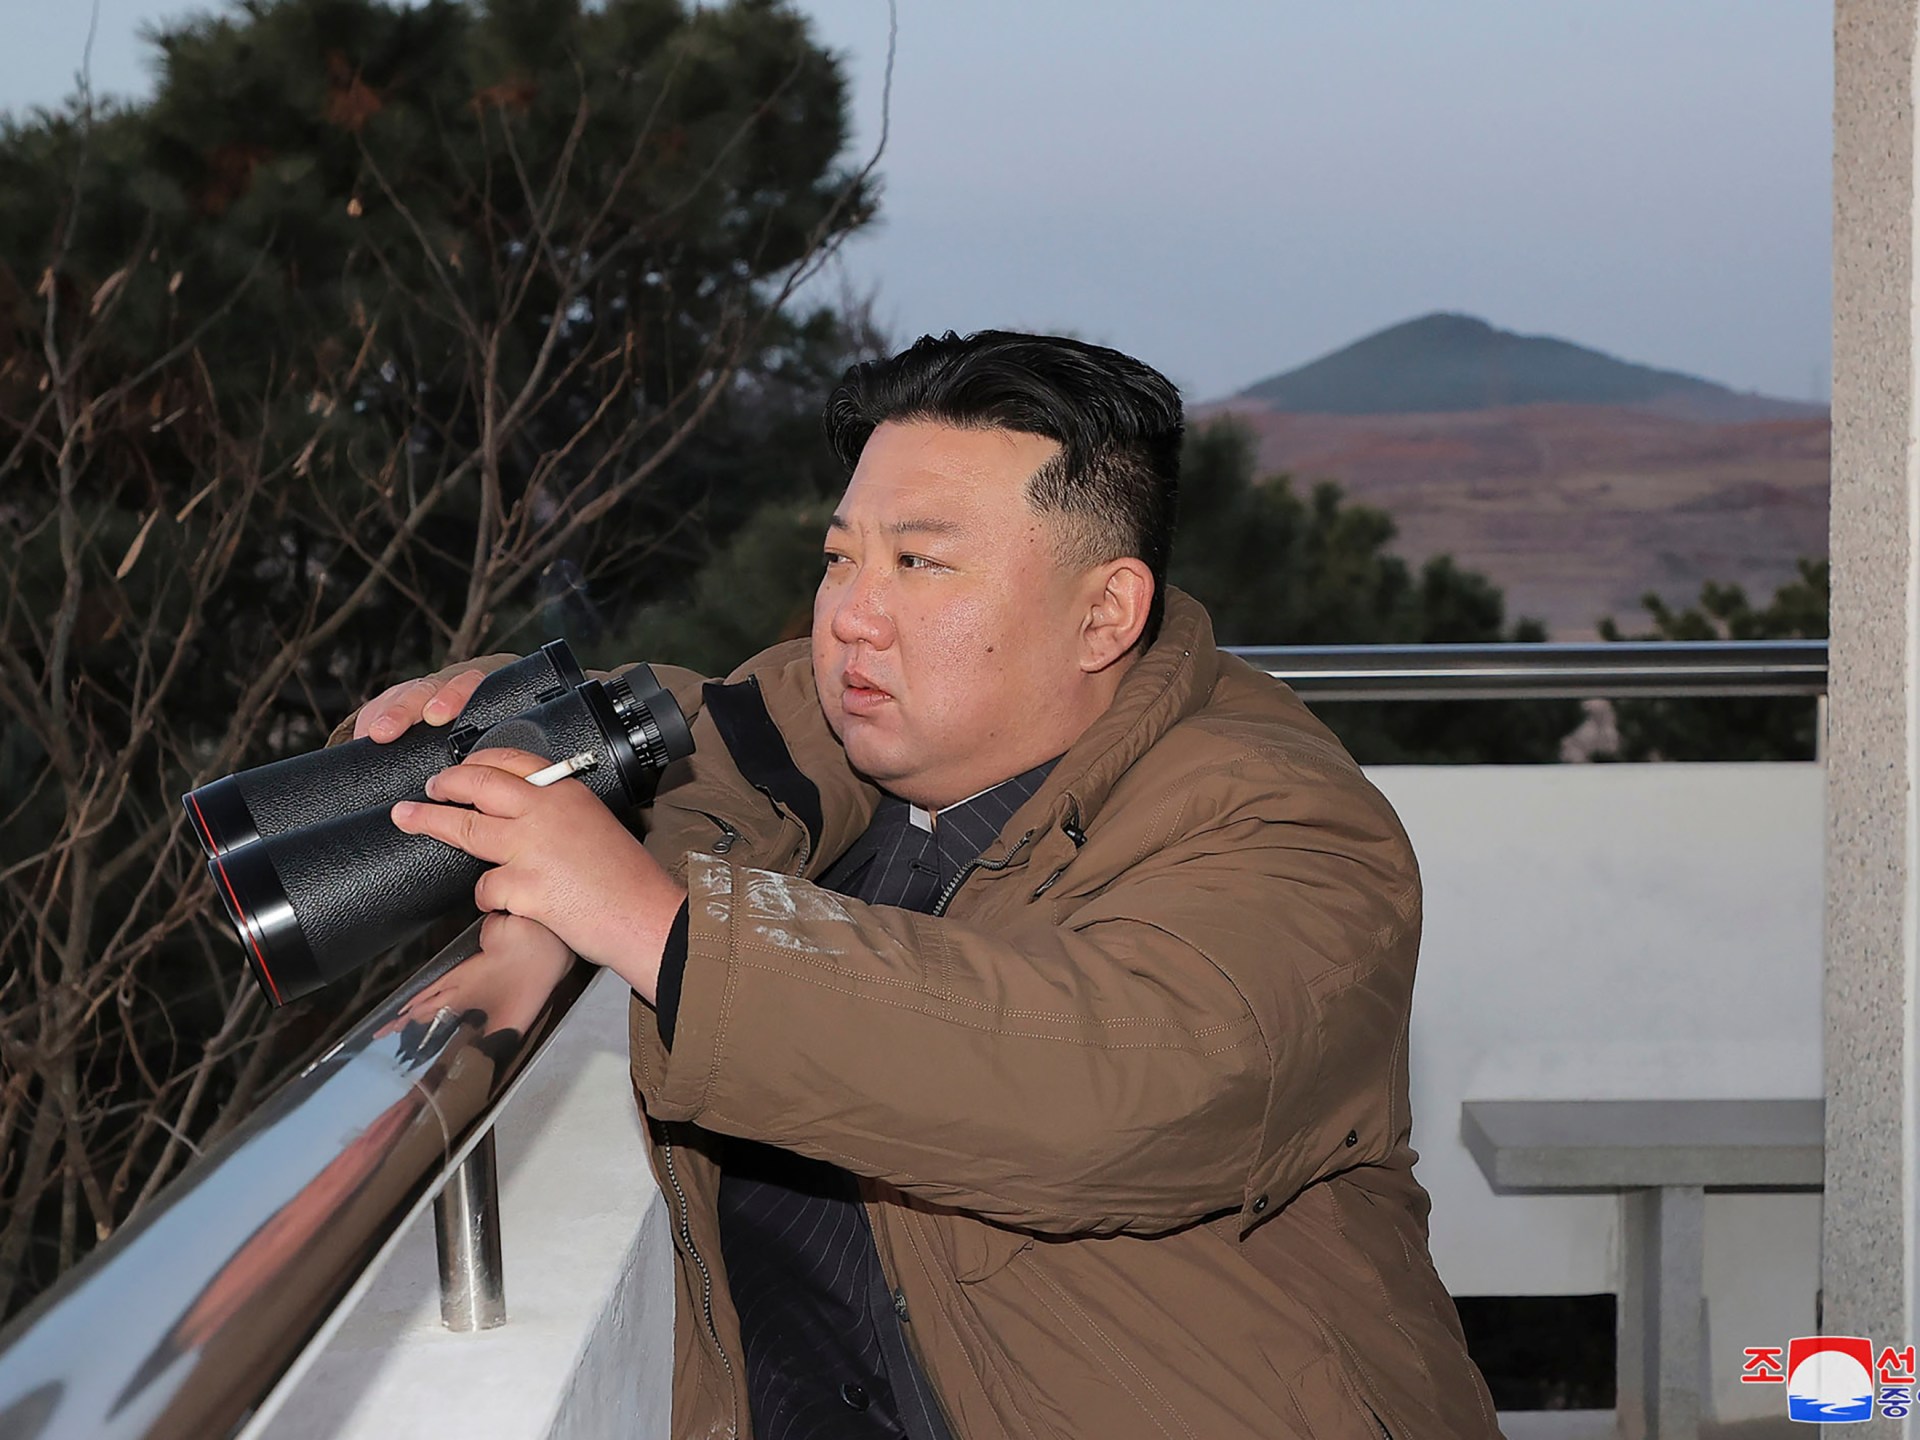 Kim de Corée du Nord mène des exercices qui simulent une contre-attaque nucléaire, selon KCNA dans les nouvelles concernant les armes.